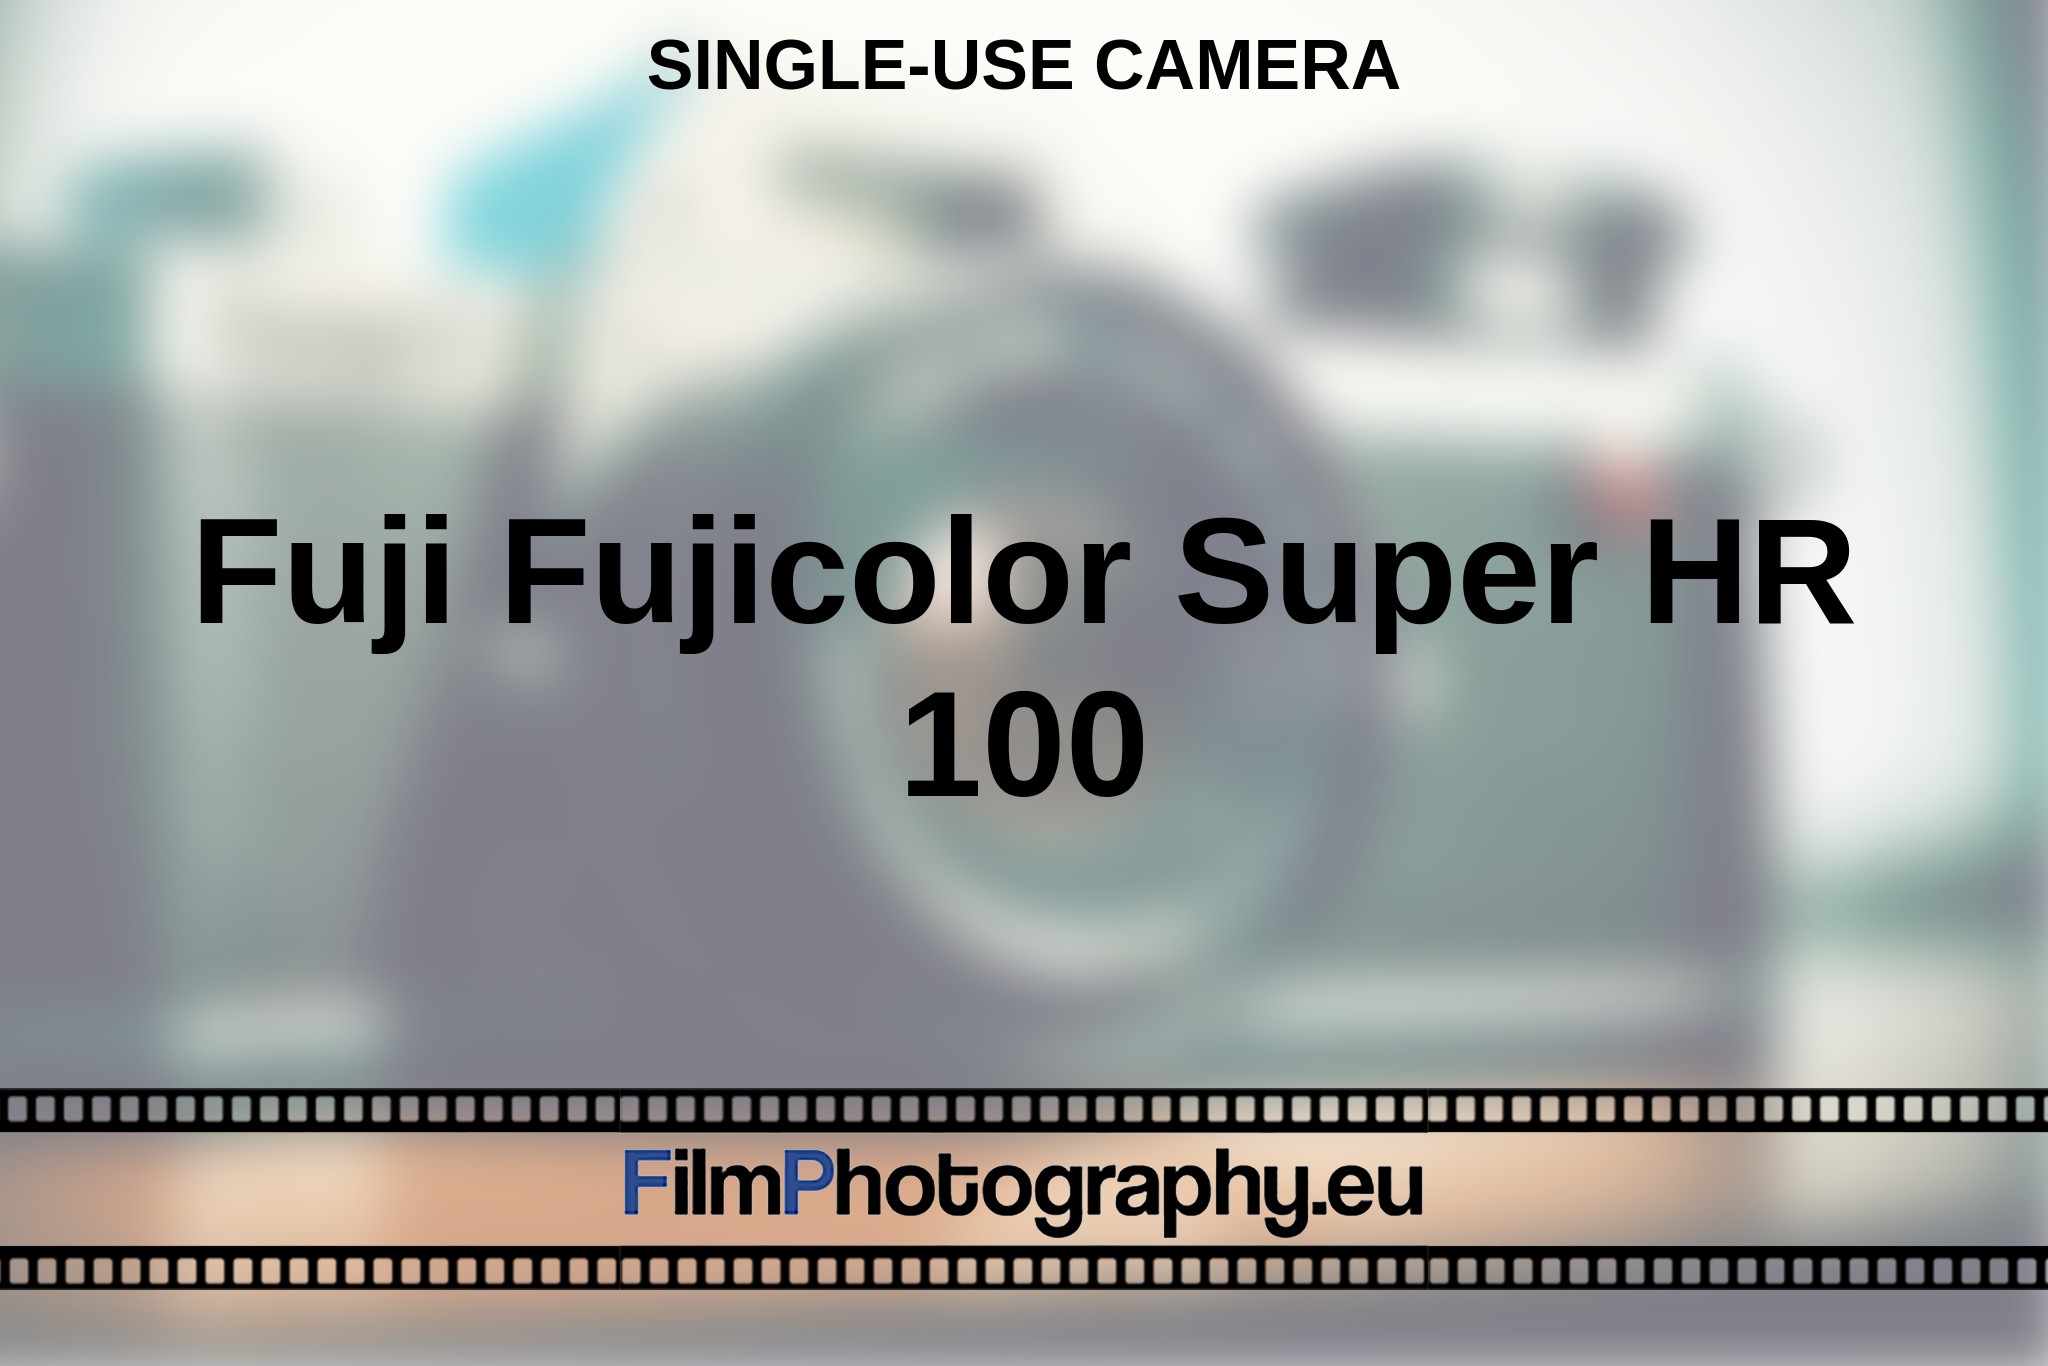 fuji-fujicolor-super-hr-100-single-use-camera-en-bnv.jpg